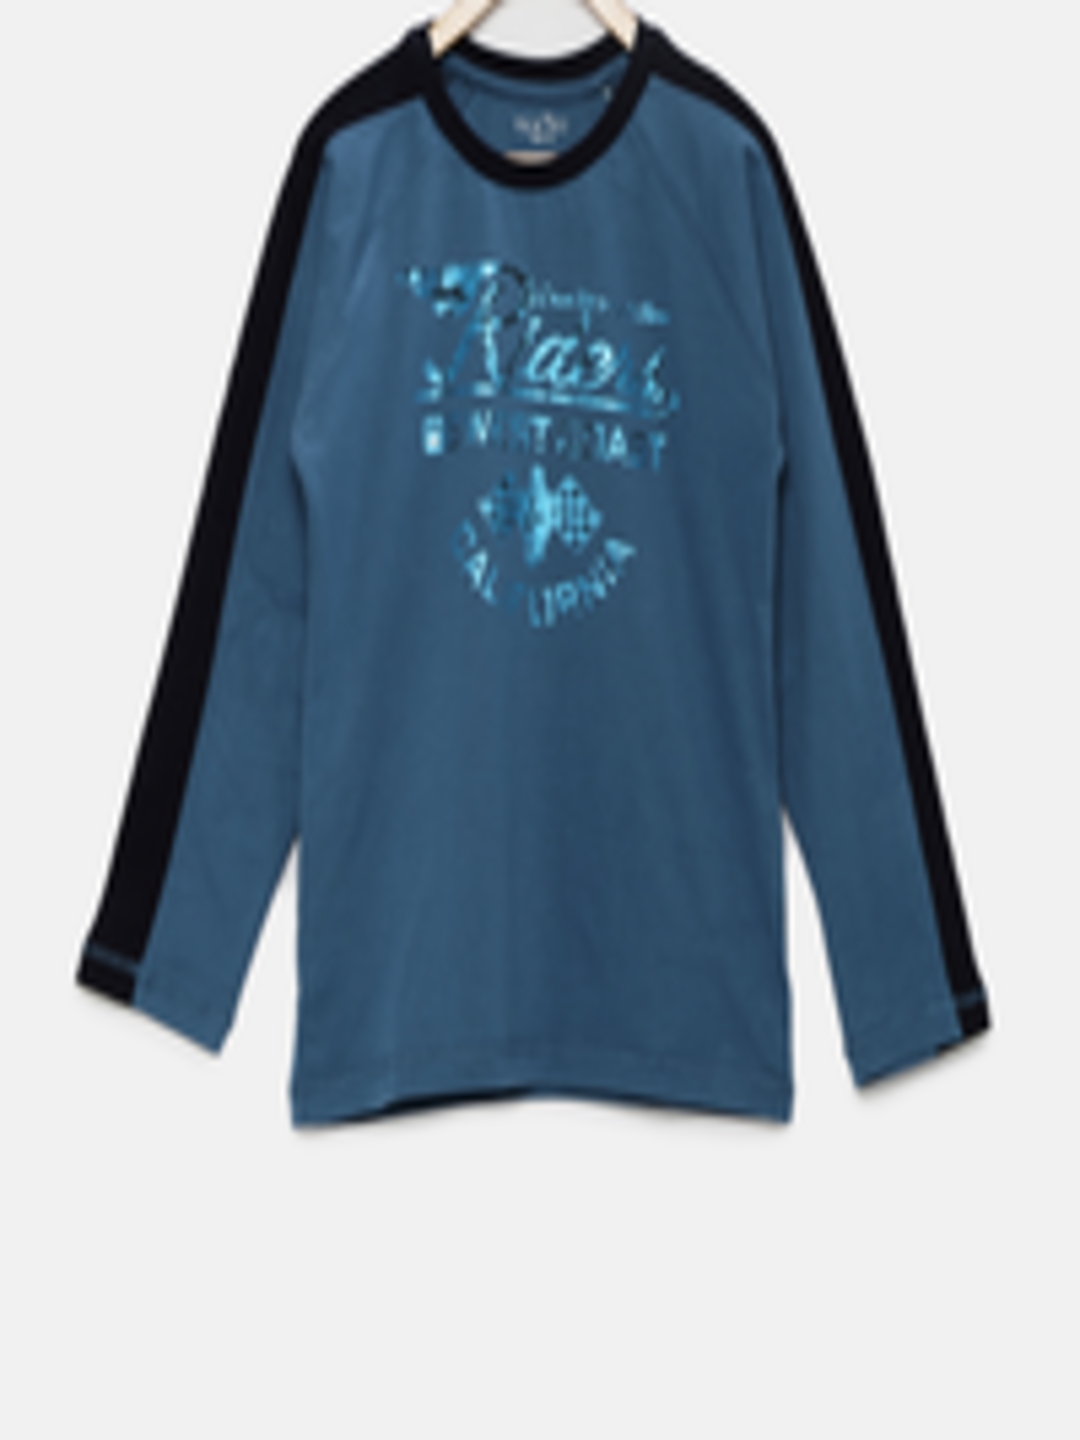 Buy Palm Tree Boys Blue Printed T Shirt - Tshirts for Boys 1564308 | Myntra